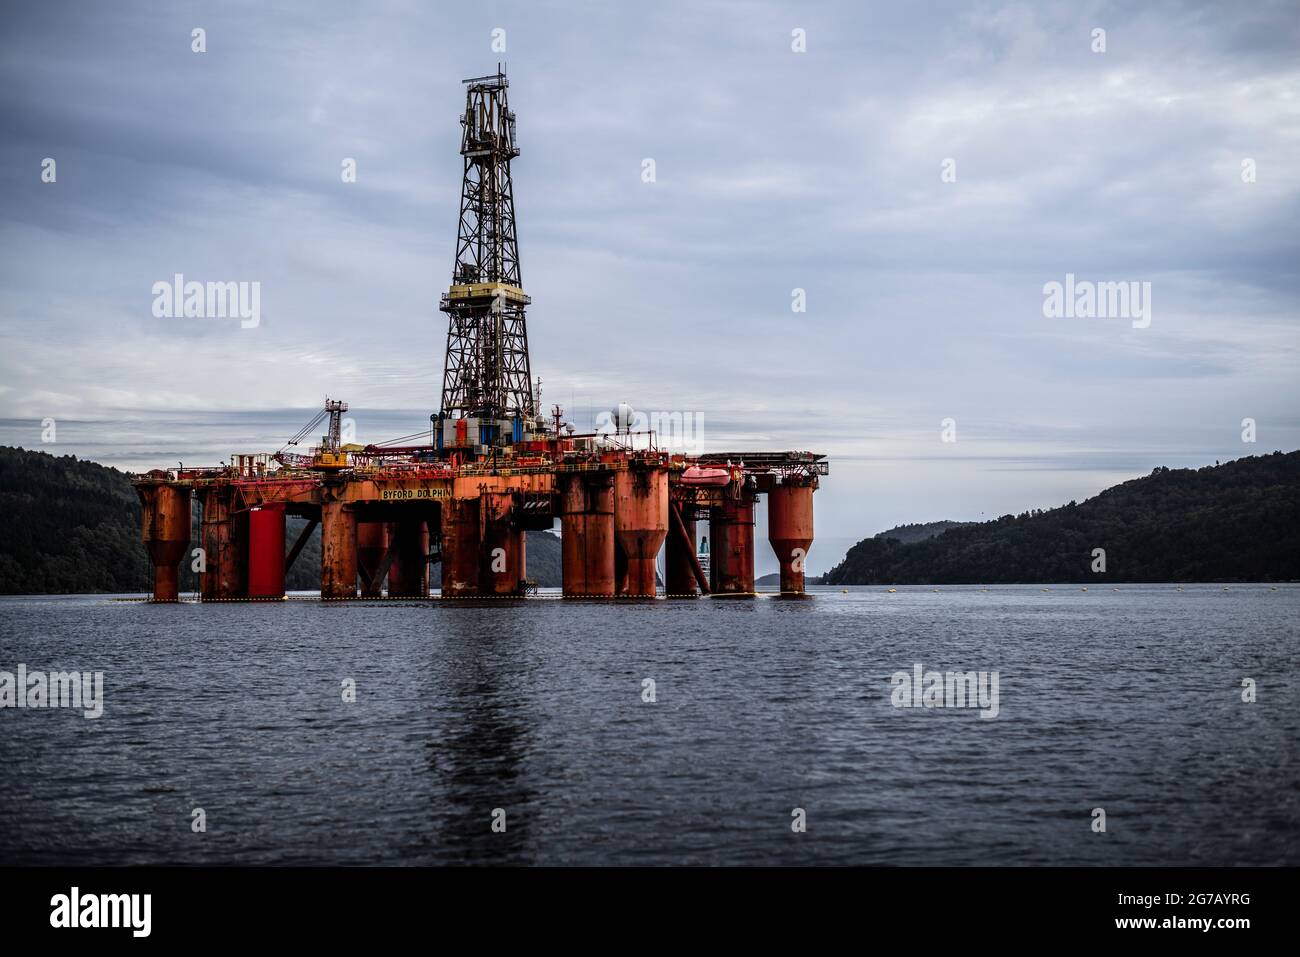 Oil rig in fjord Stock Photo